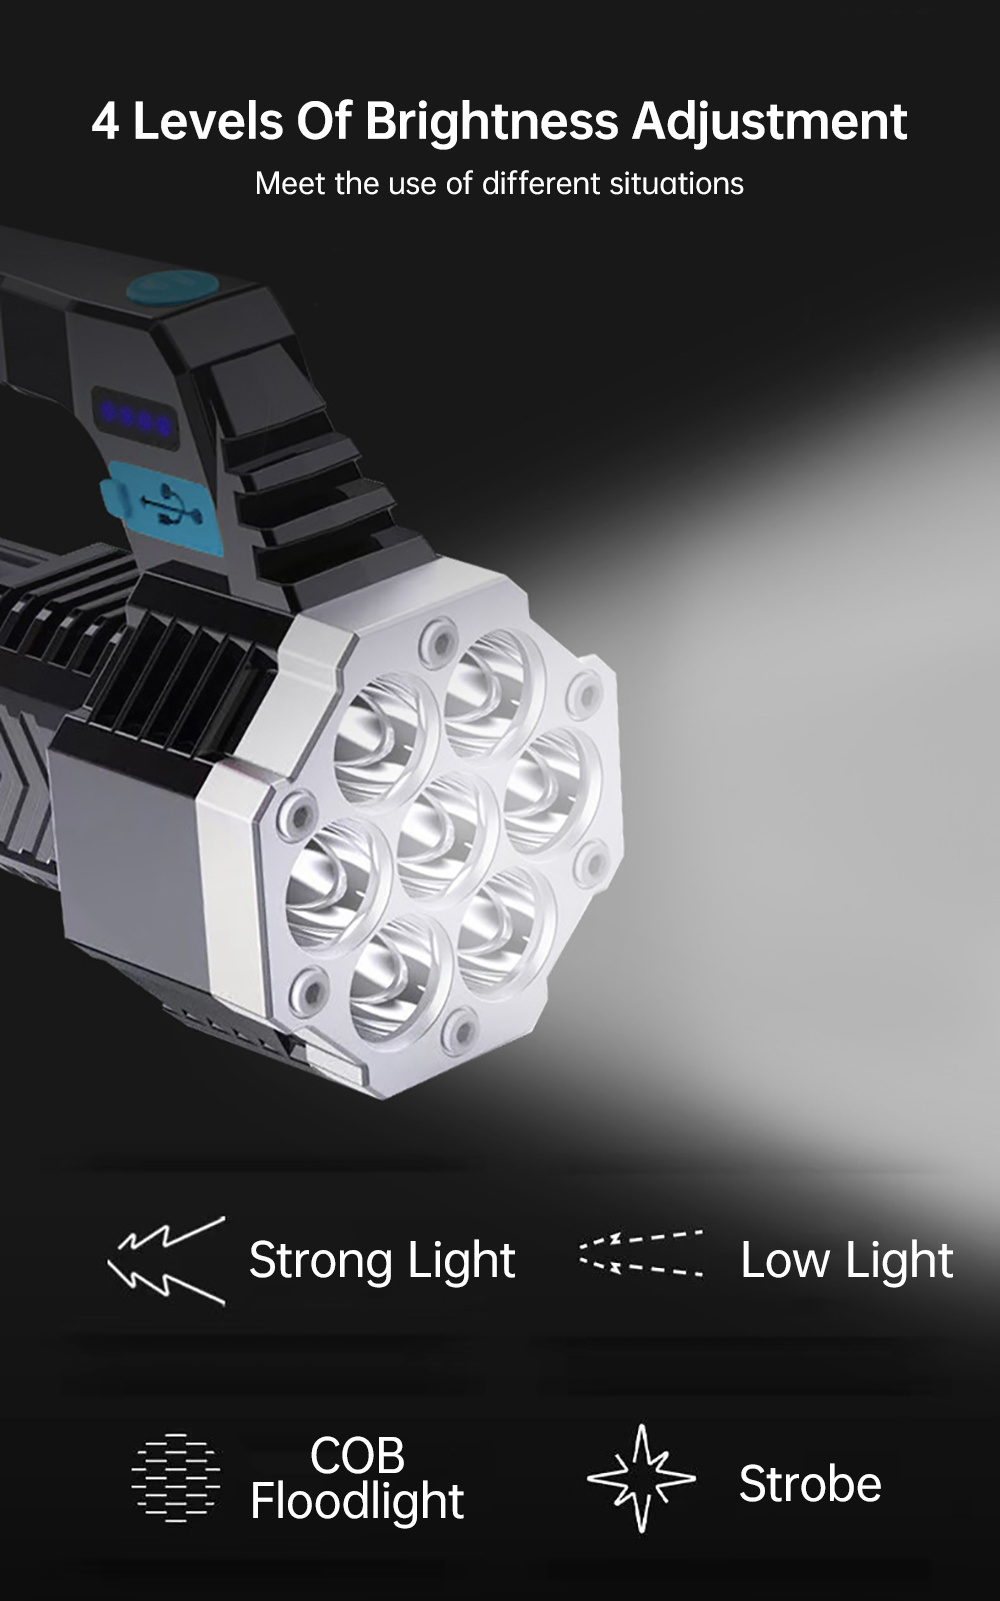 Linternas LED de alta potencia luz lateral COB iluminación exterior ligera  Kuymtek antorcha ABS 4LED linterna recargable de 400LM potente